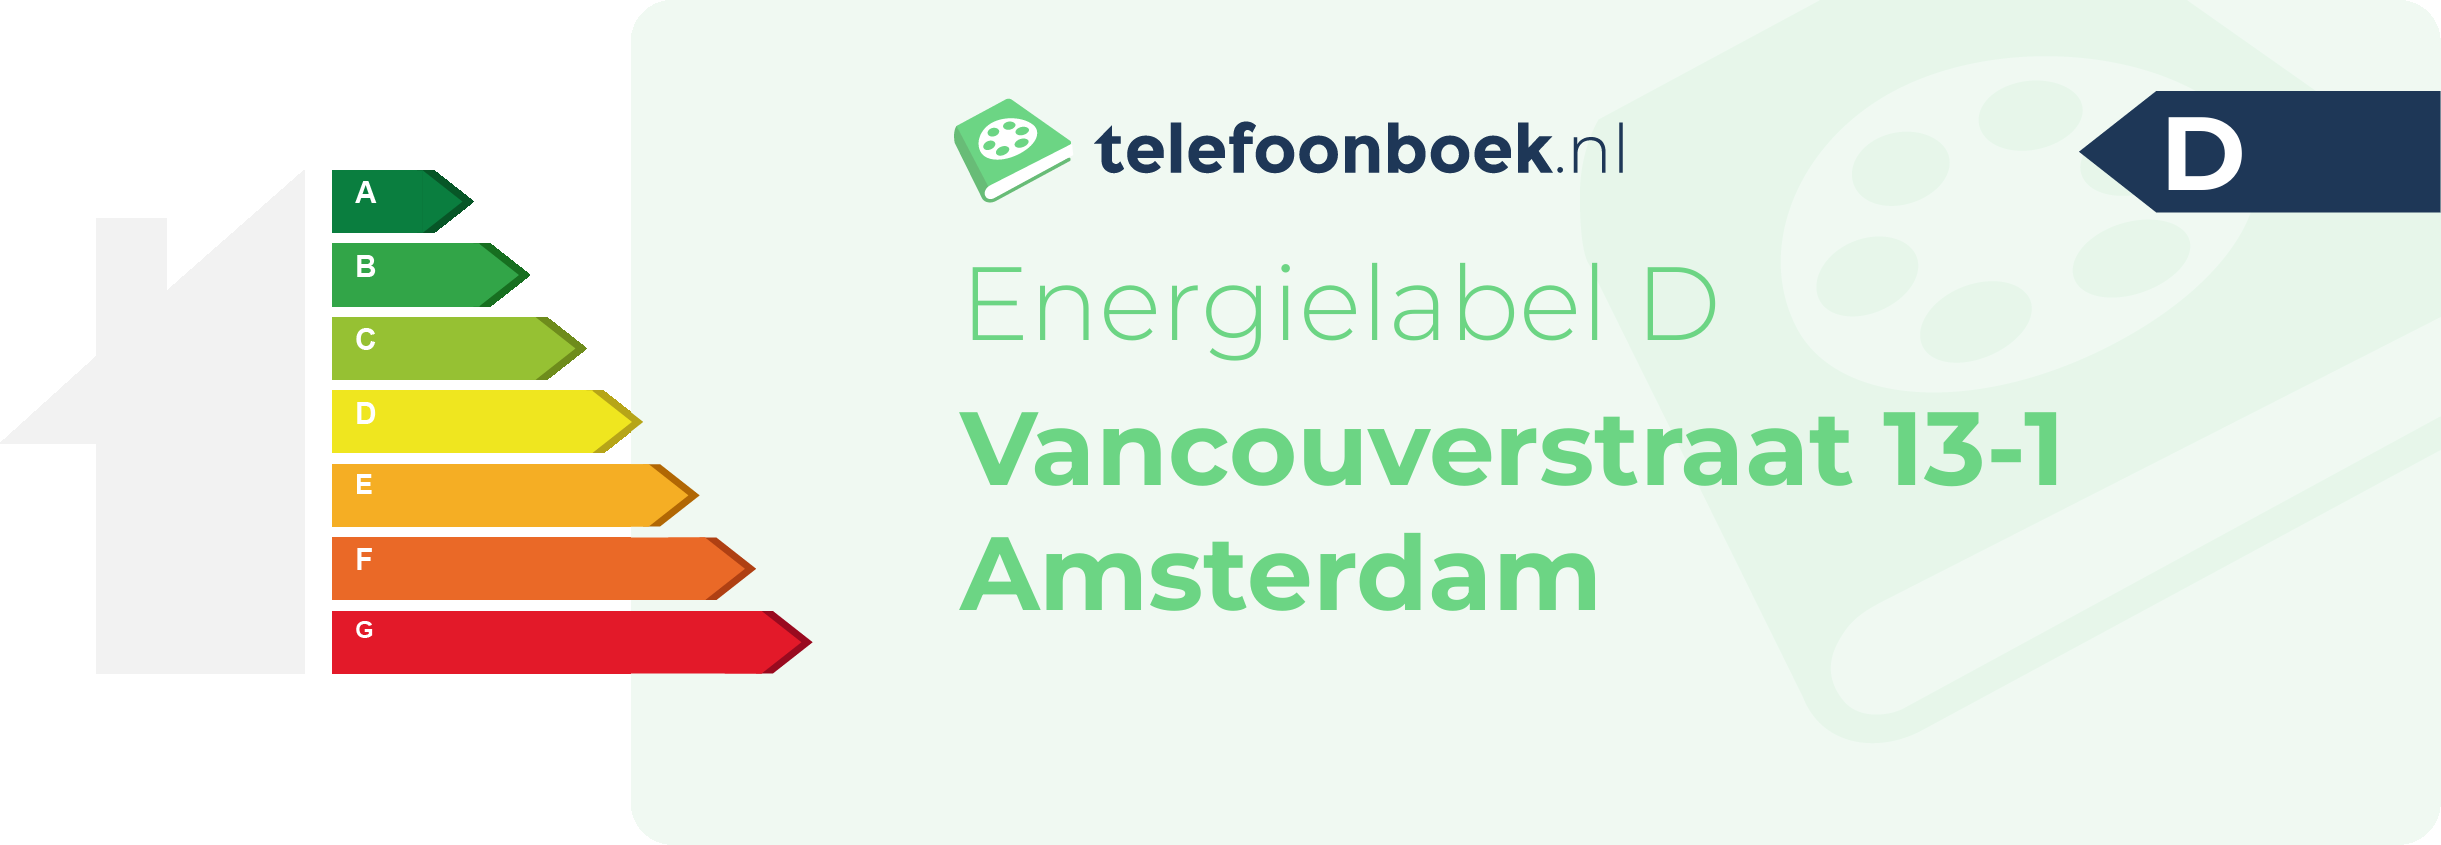 Energielabel Vancouverstraat 13-1 Amsterdam